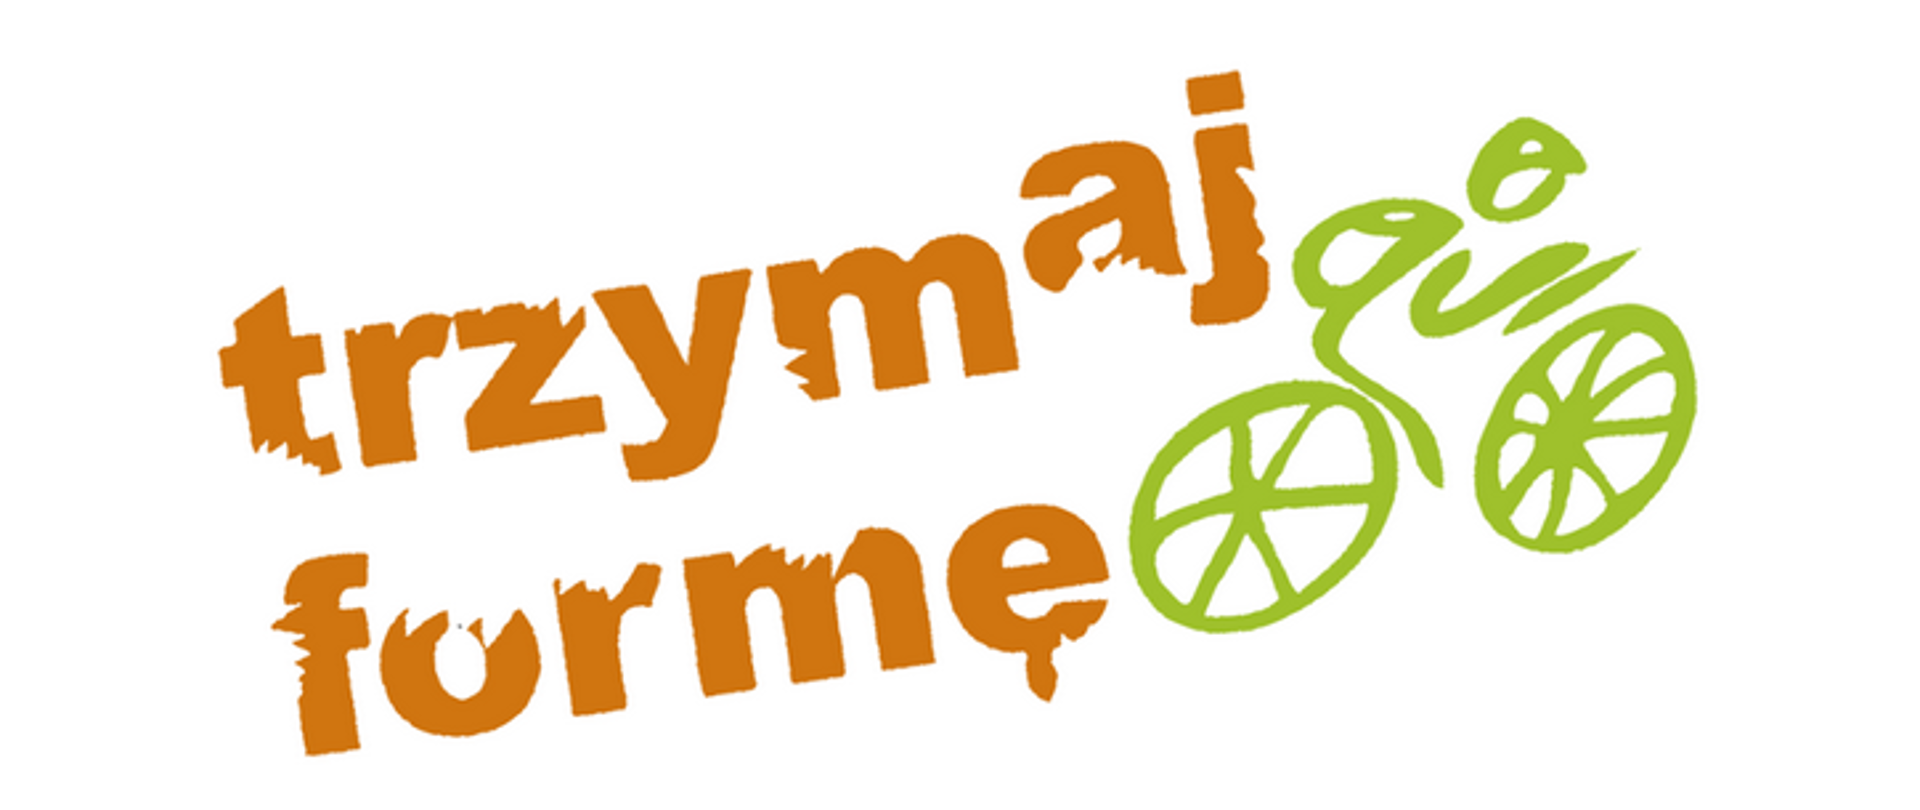 Pomarańczowy napis "trzymaj formę", obok zielony rysunek rowerzysty